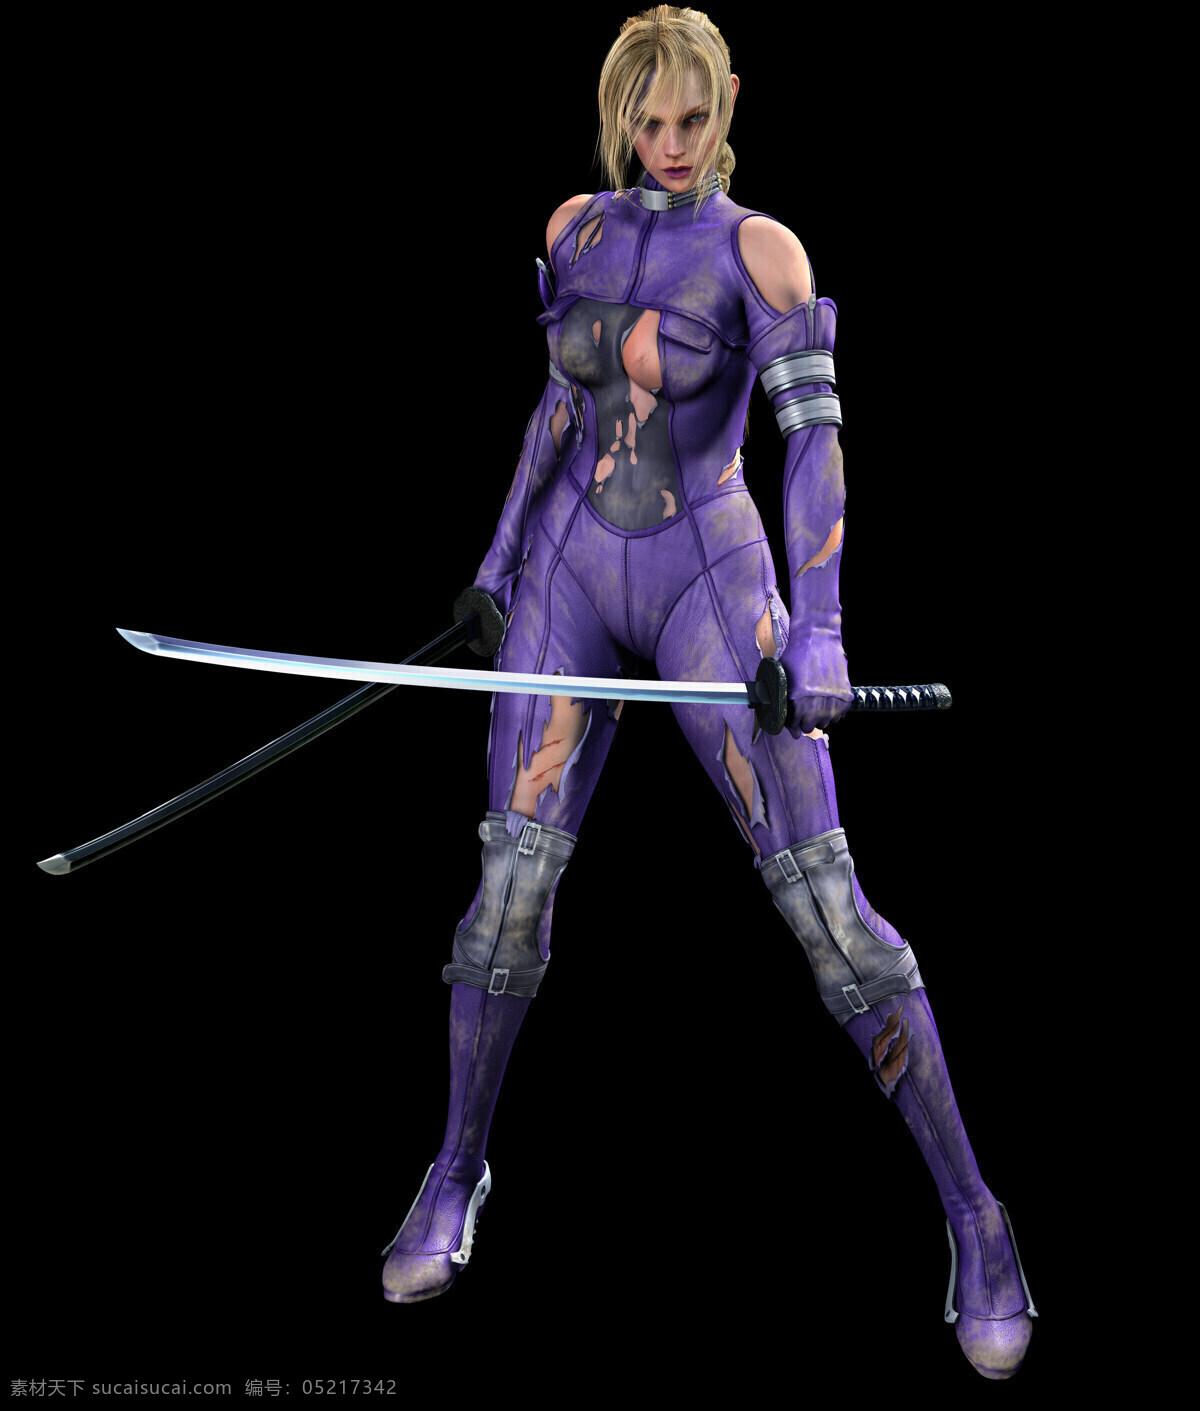 铁拳 角色设定原图 妮娜 角色设定图 高清原图 nina williams 金发 美女 紫色战斗服 性感 持刀 武器 动漫人物 动漫动画